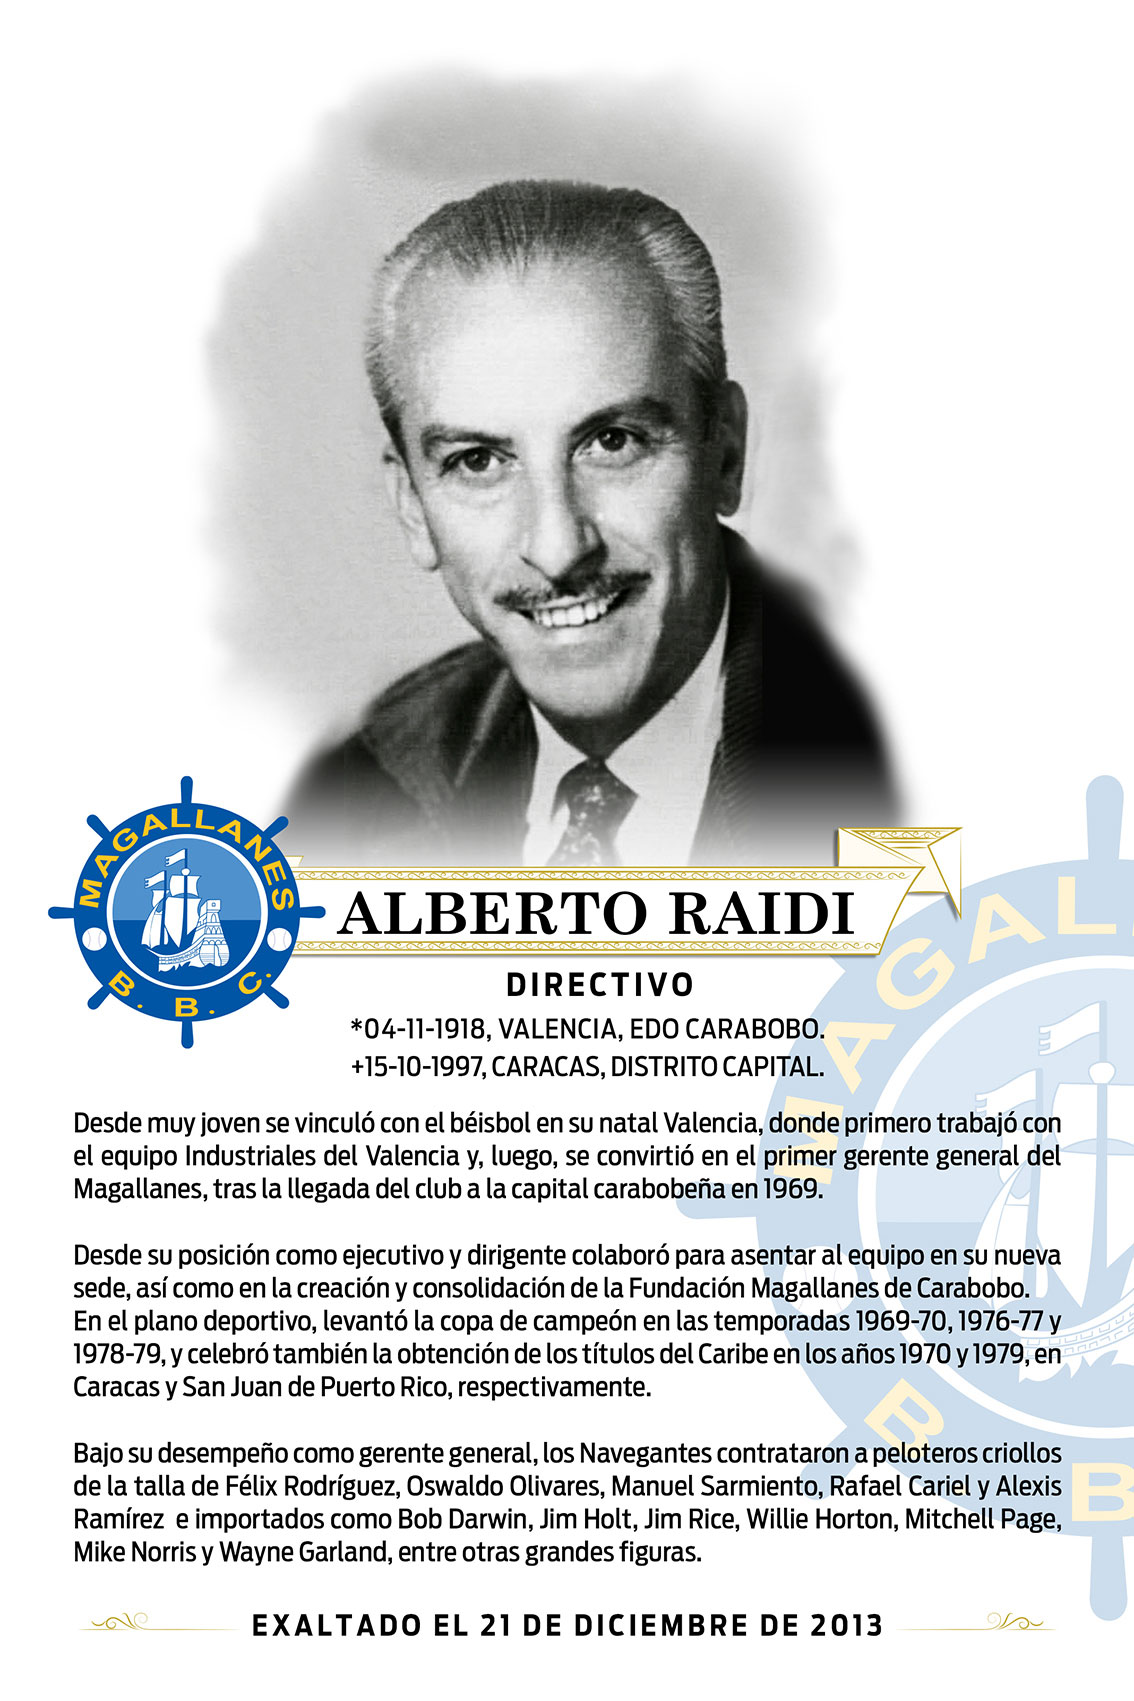 Alberto Raidi